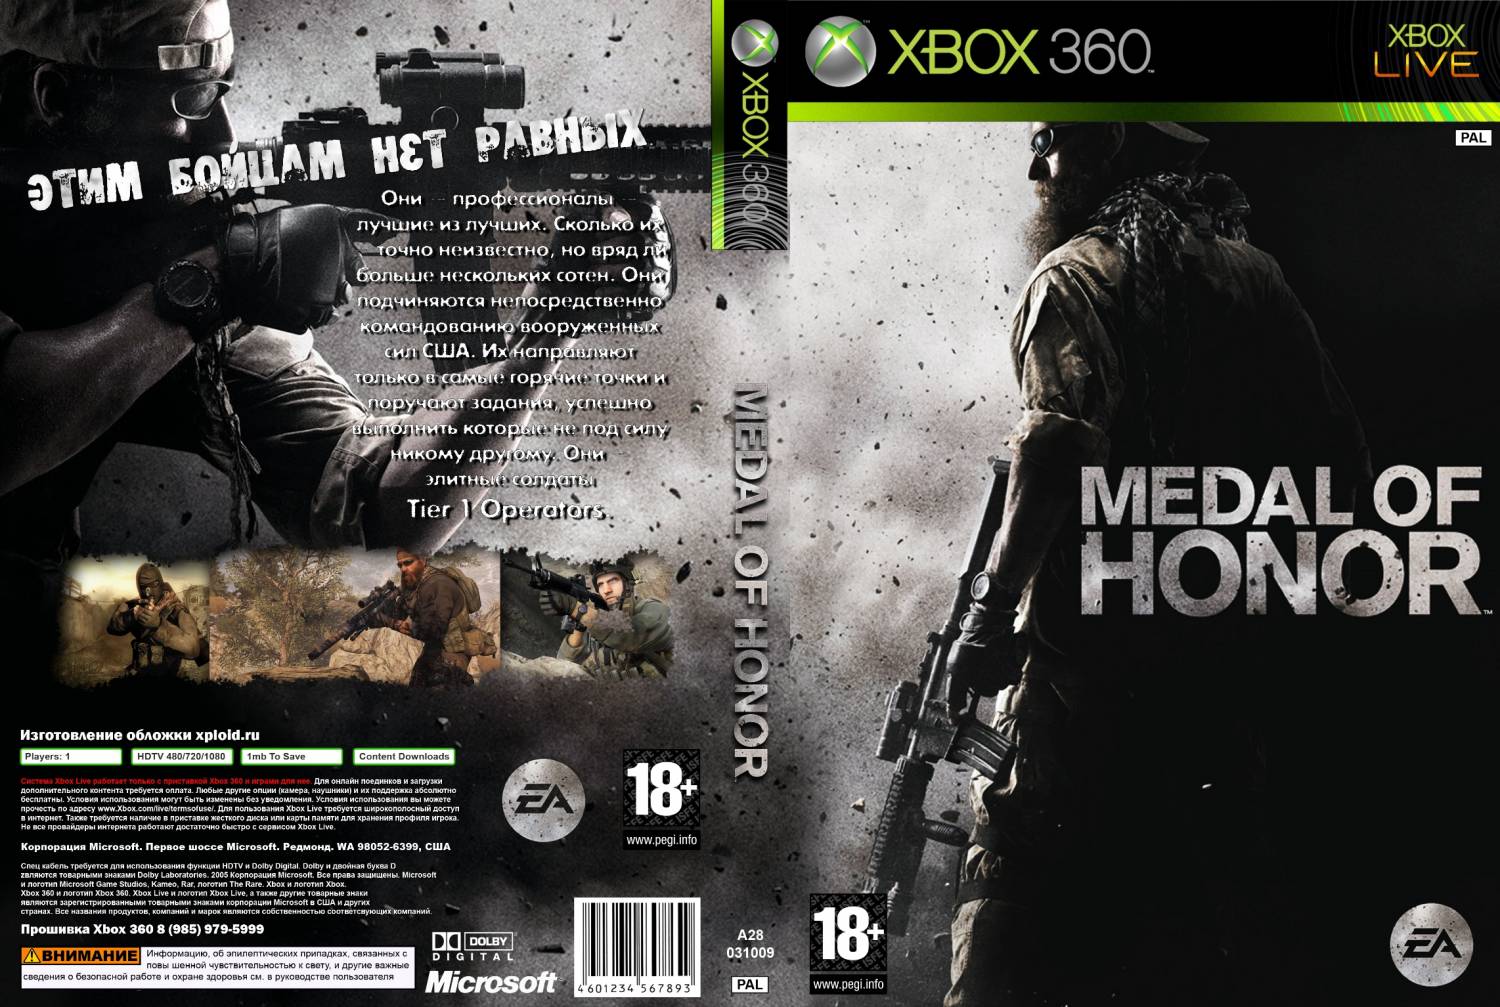 Игры на икс бокс 360 прошивка. Medal of Honor Xbox 360 обложка. Medal of Honor 2010 обложка. Медаль оф хонор на Икс бокс 360. Medal of Honor 2010 Xbox 360 обложка.